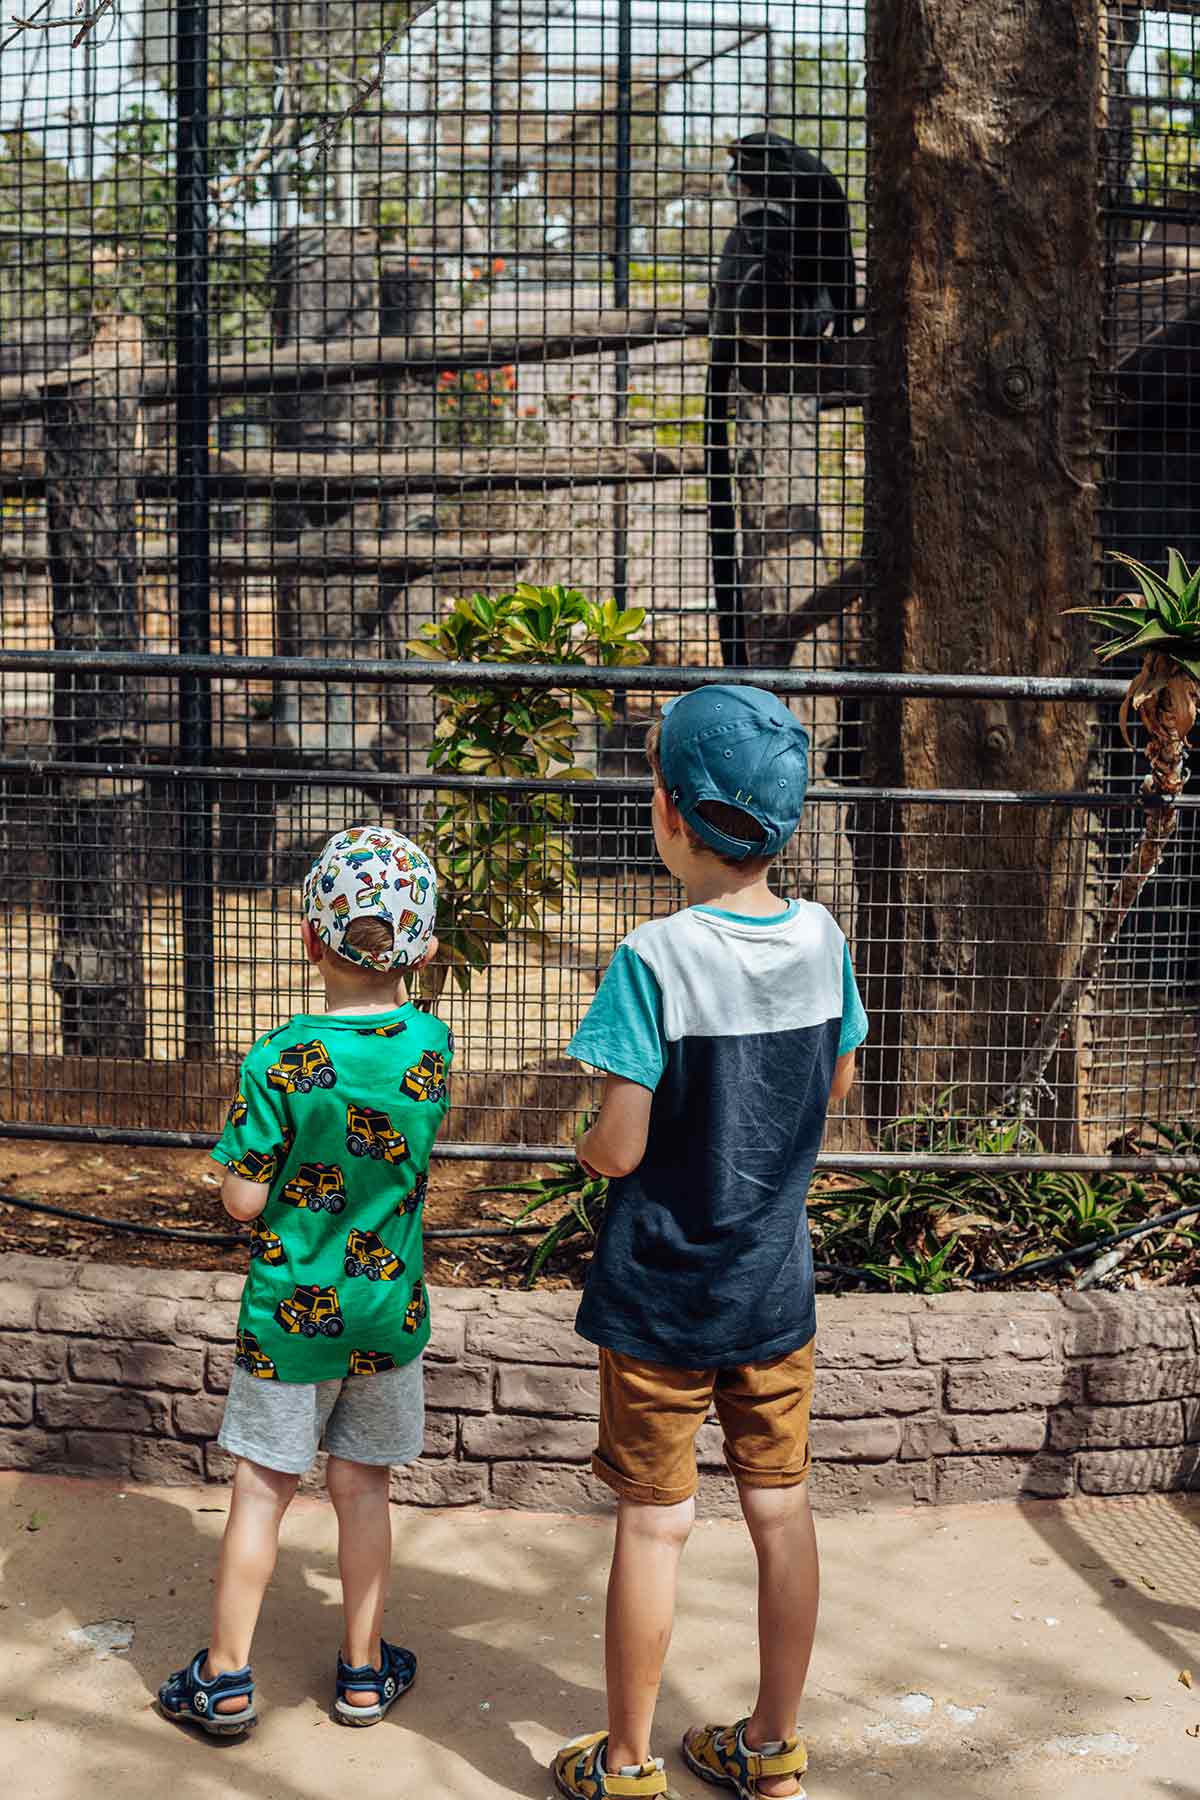 Kids in Monkey Park, Tenerife